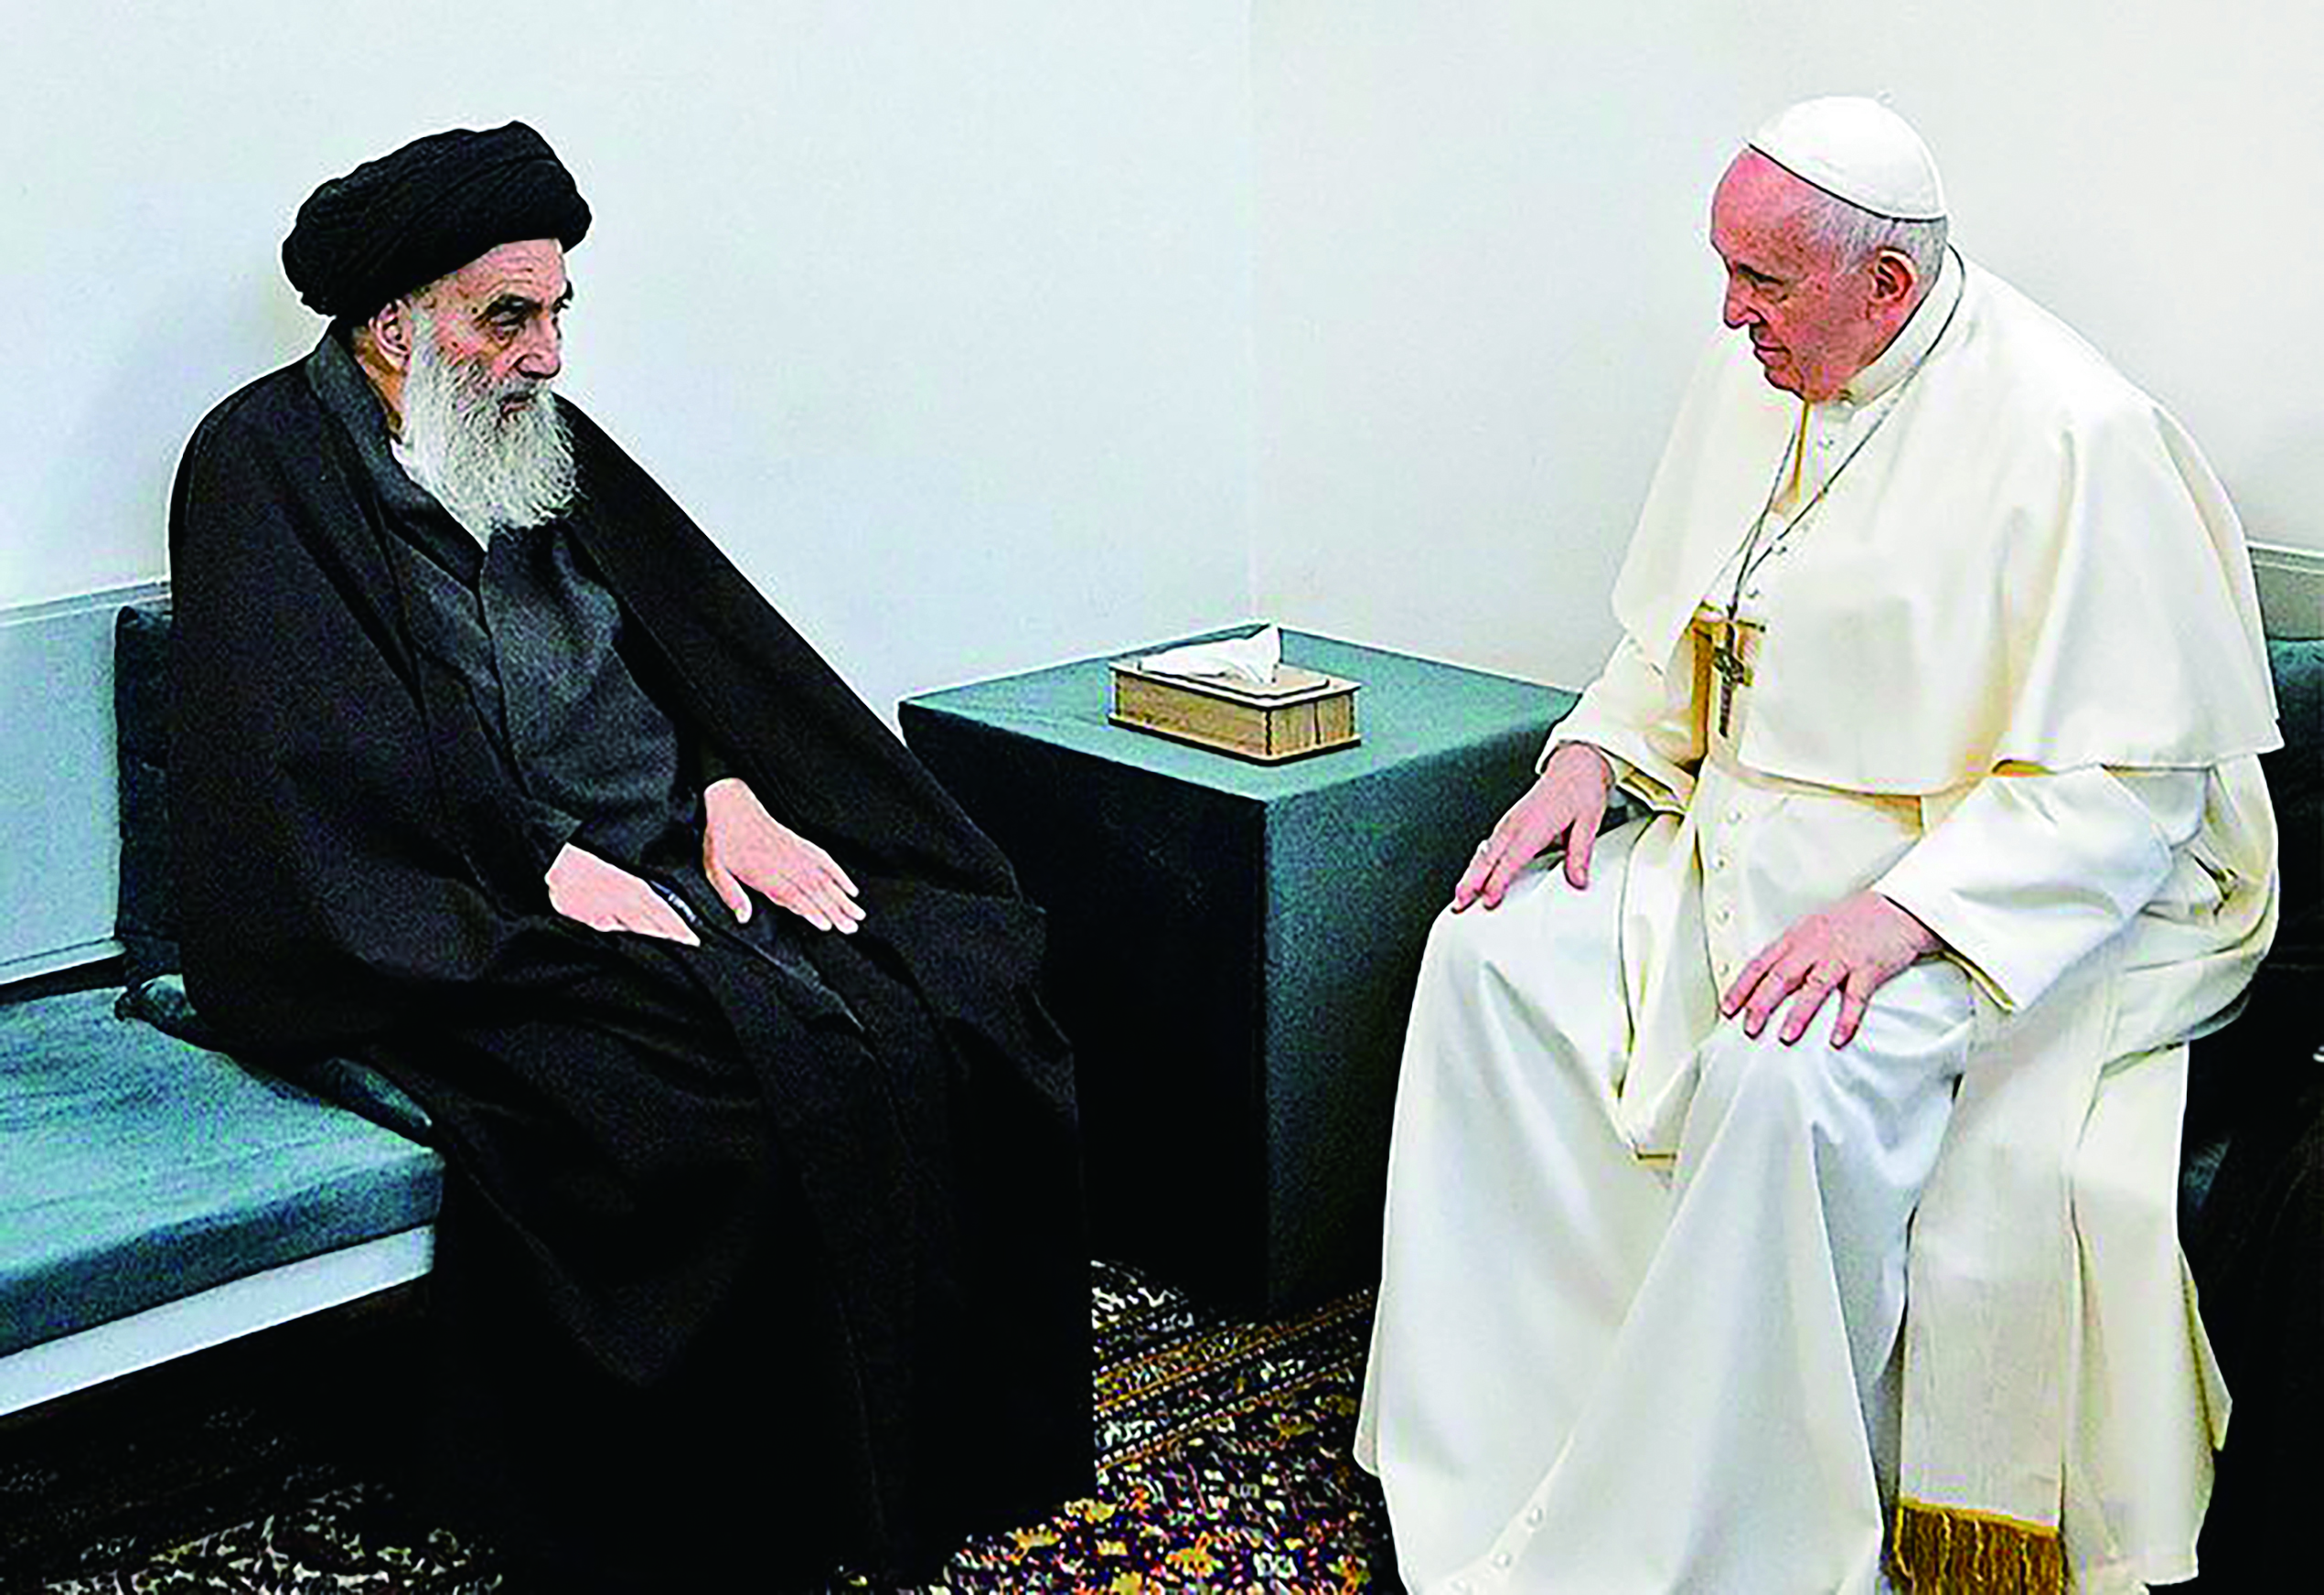 이슬람 시아파 최고 권위자가 가톨릭 교황에게 “신 앞에 모든 인간은 평등하다”